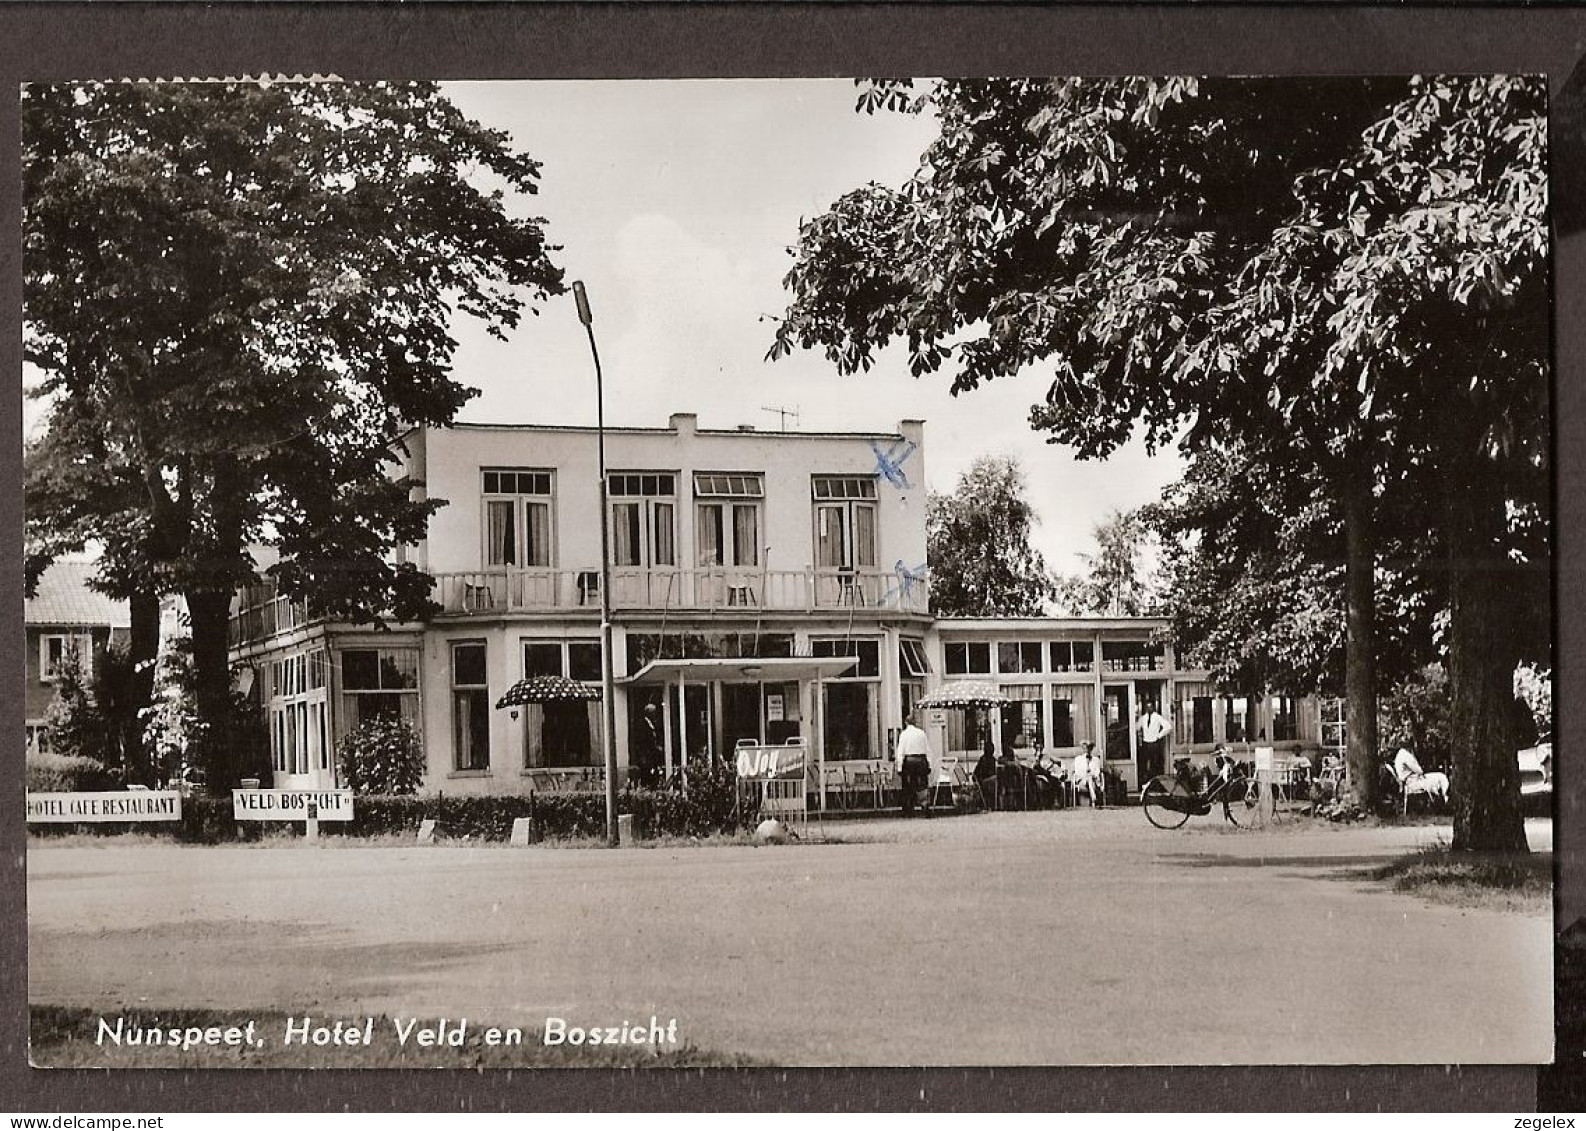 Nunspeet - Hotel Veld En Boszicht -1964 - Nunspeet